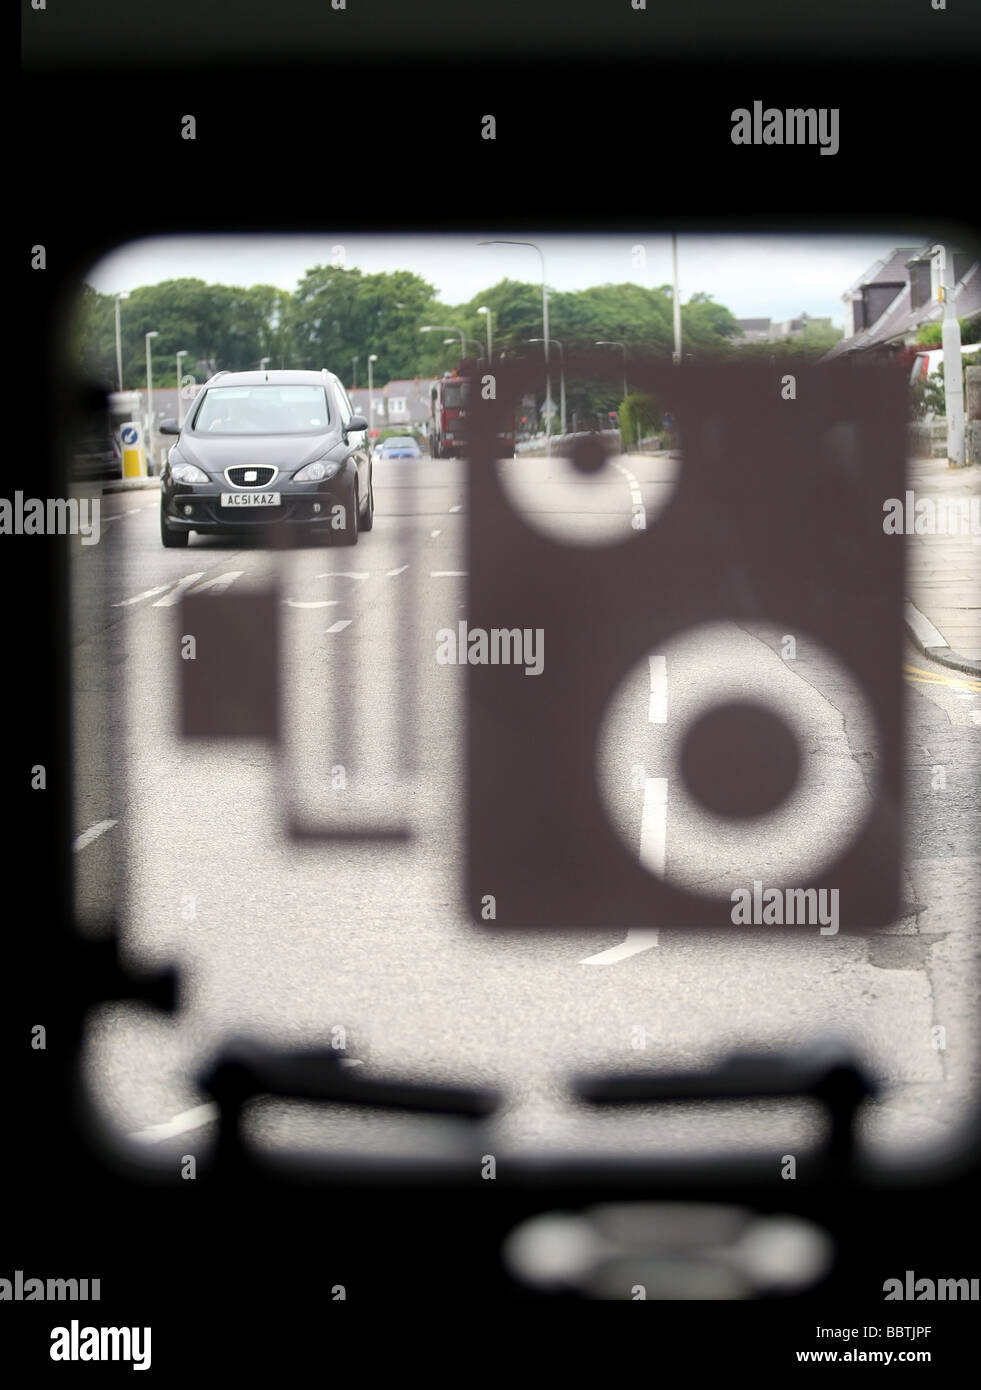 Una vista attraverso la finestra di una telecamera di sicurezza van che mostra la vista dell'operatore, con la finestra chiusa e la velocità di simbolo della fotocamera Foto Stock